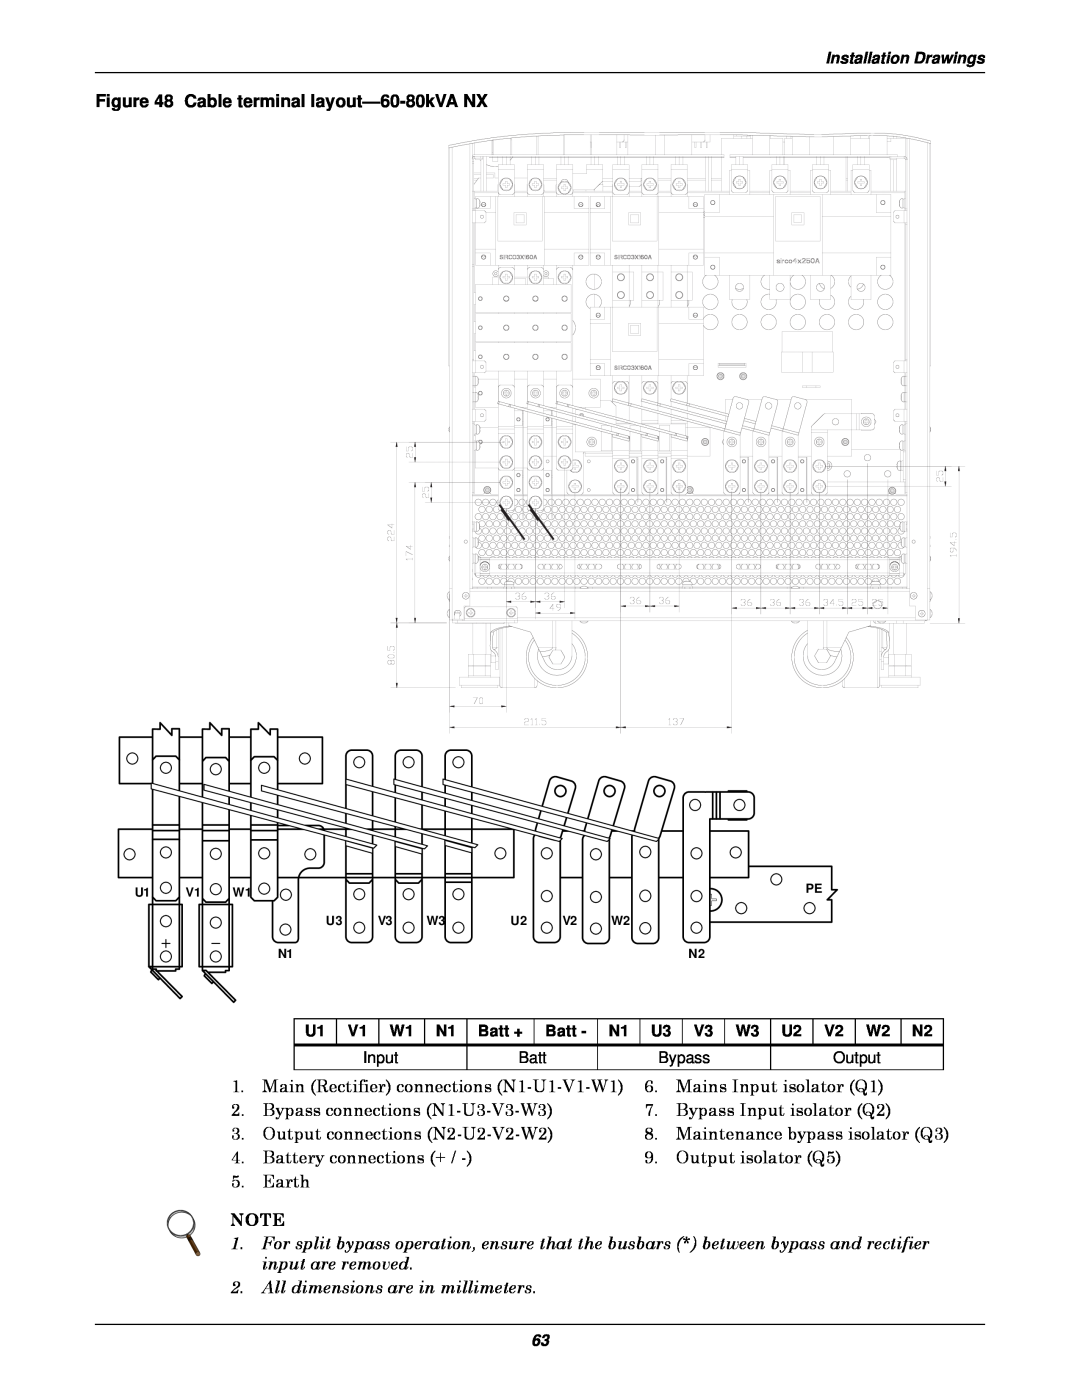 Emerson 50 and 60 Hz, 400V, 30-200kVA user manual Cable terminal layout-60-80kVA NX 